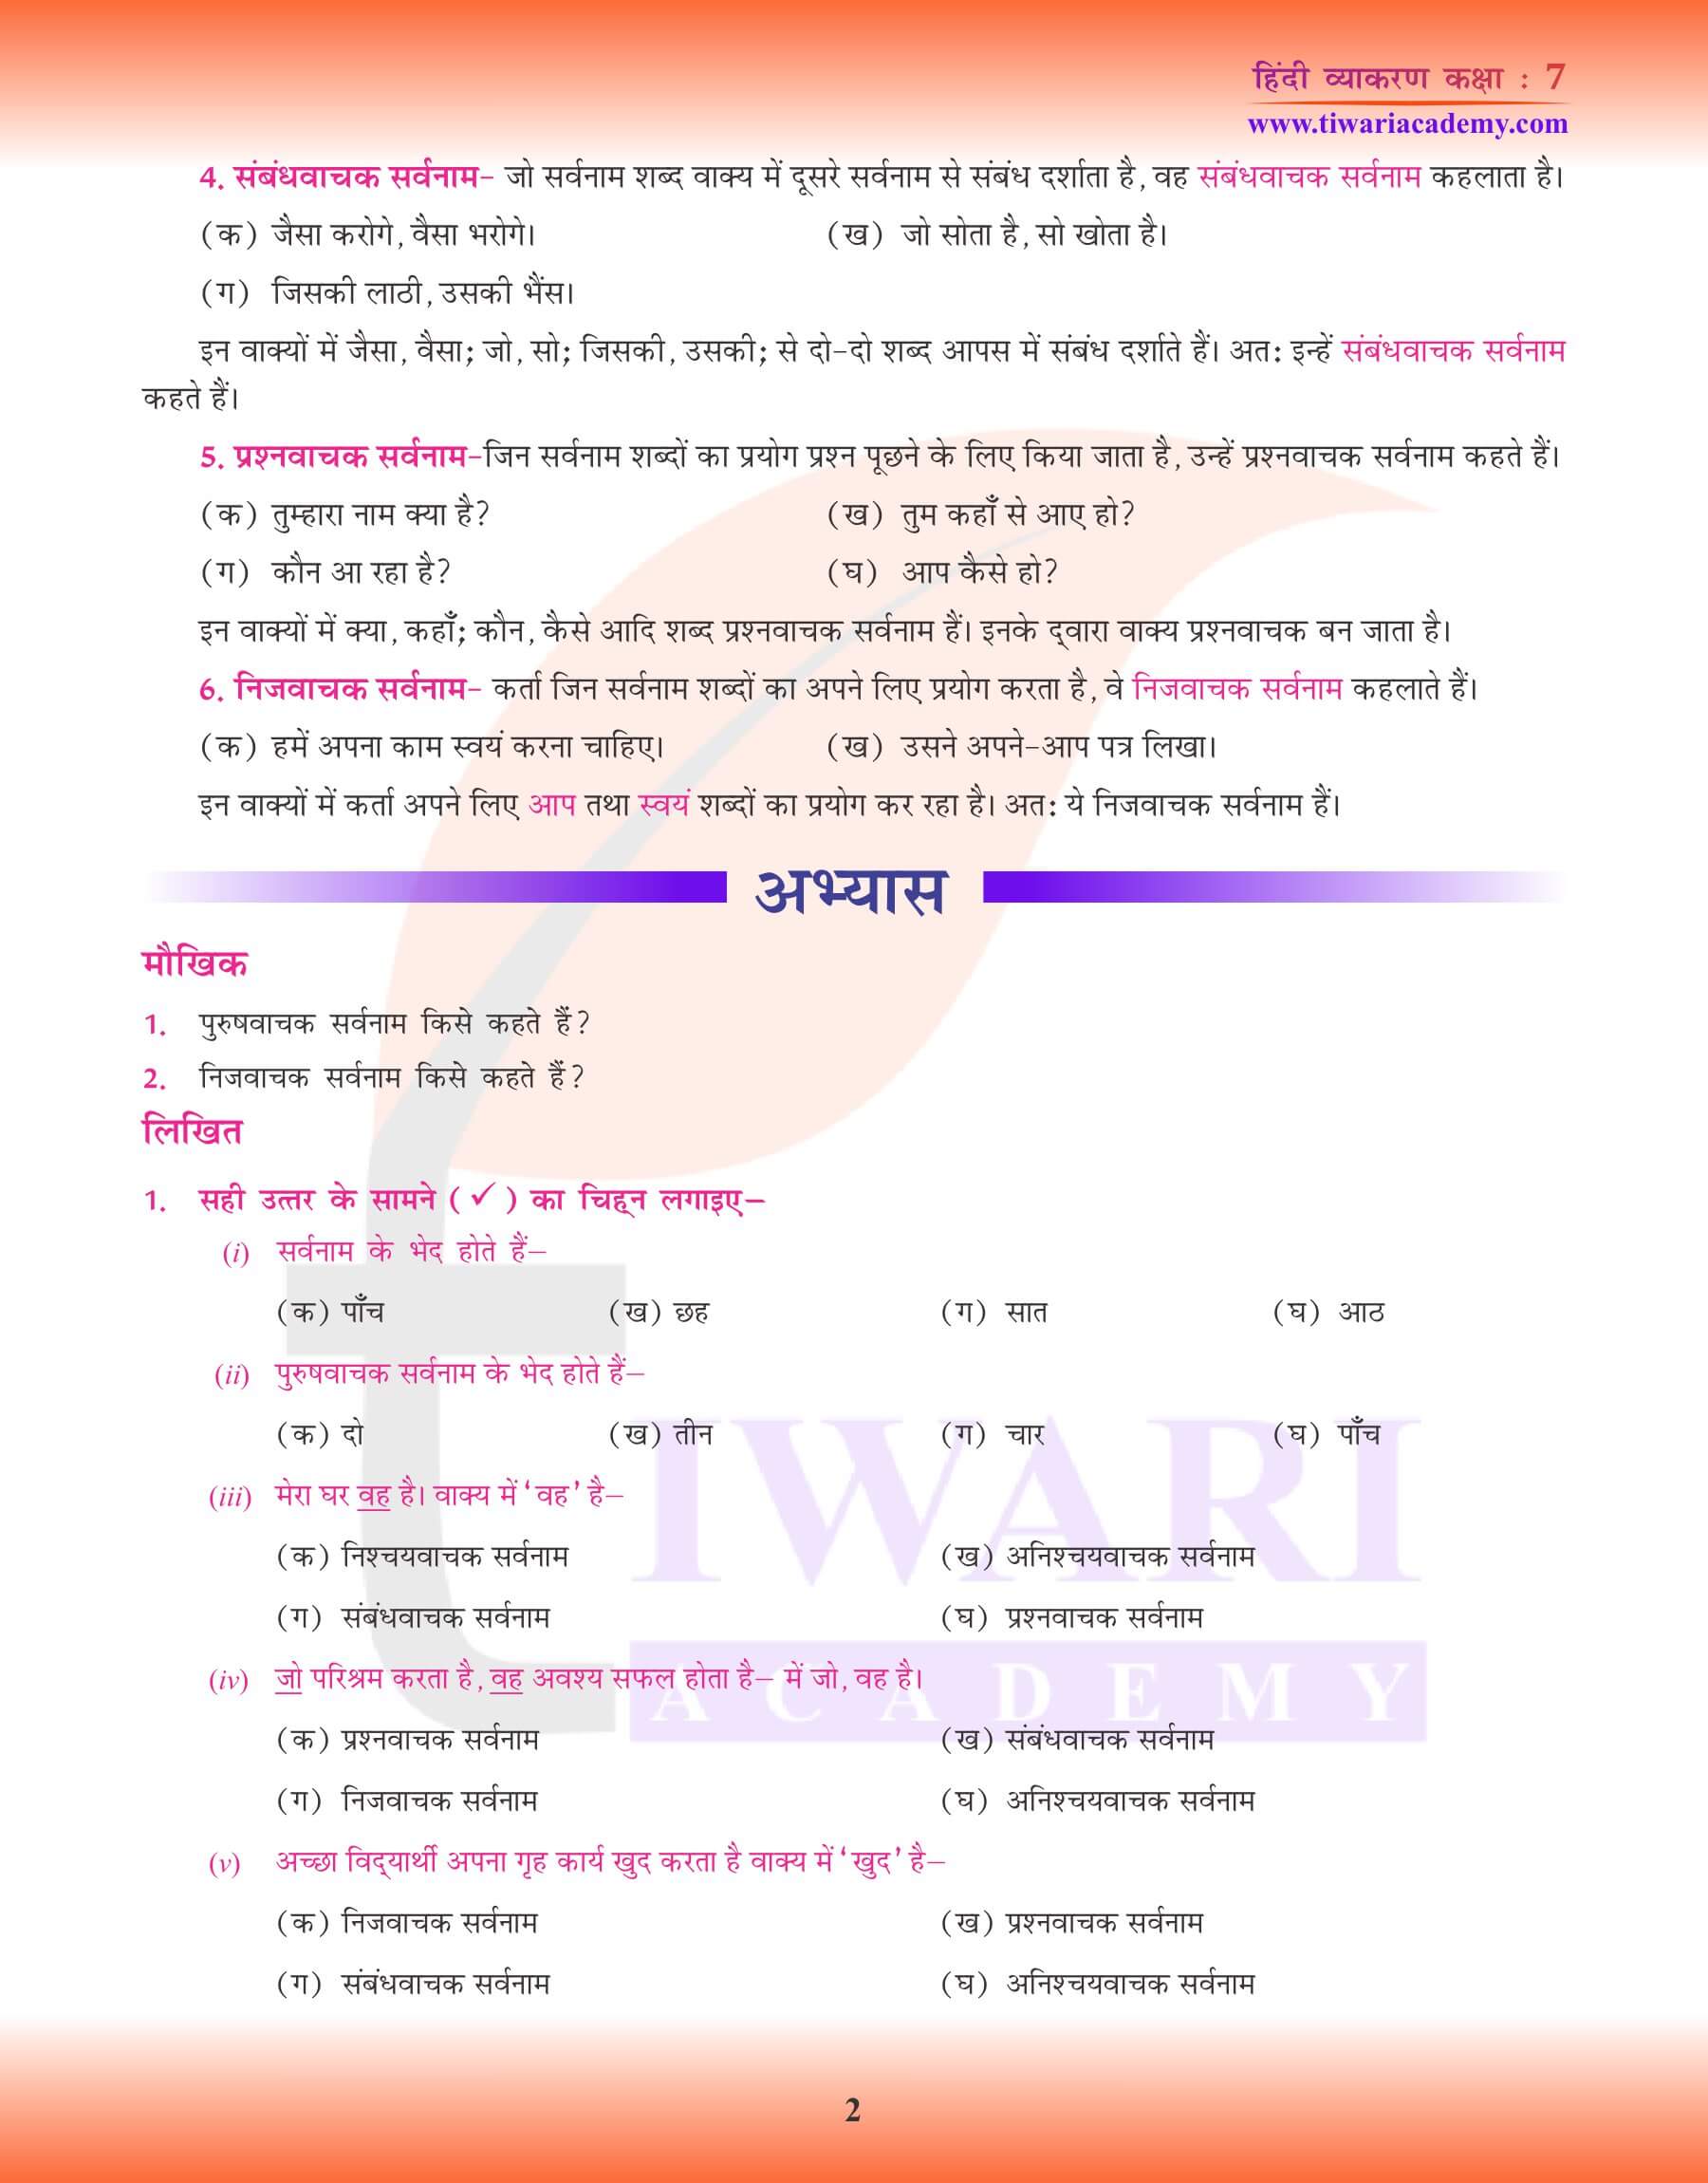 कक्षा 7 हिंदी व्याकरण में सर्वनाम